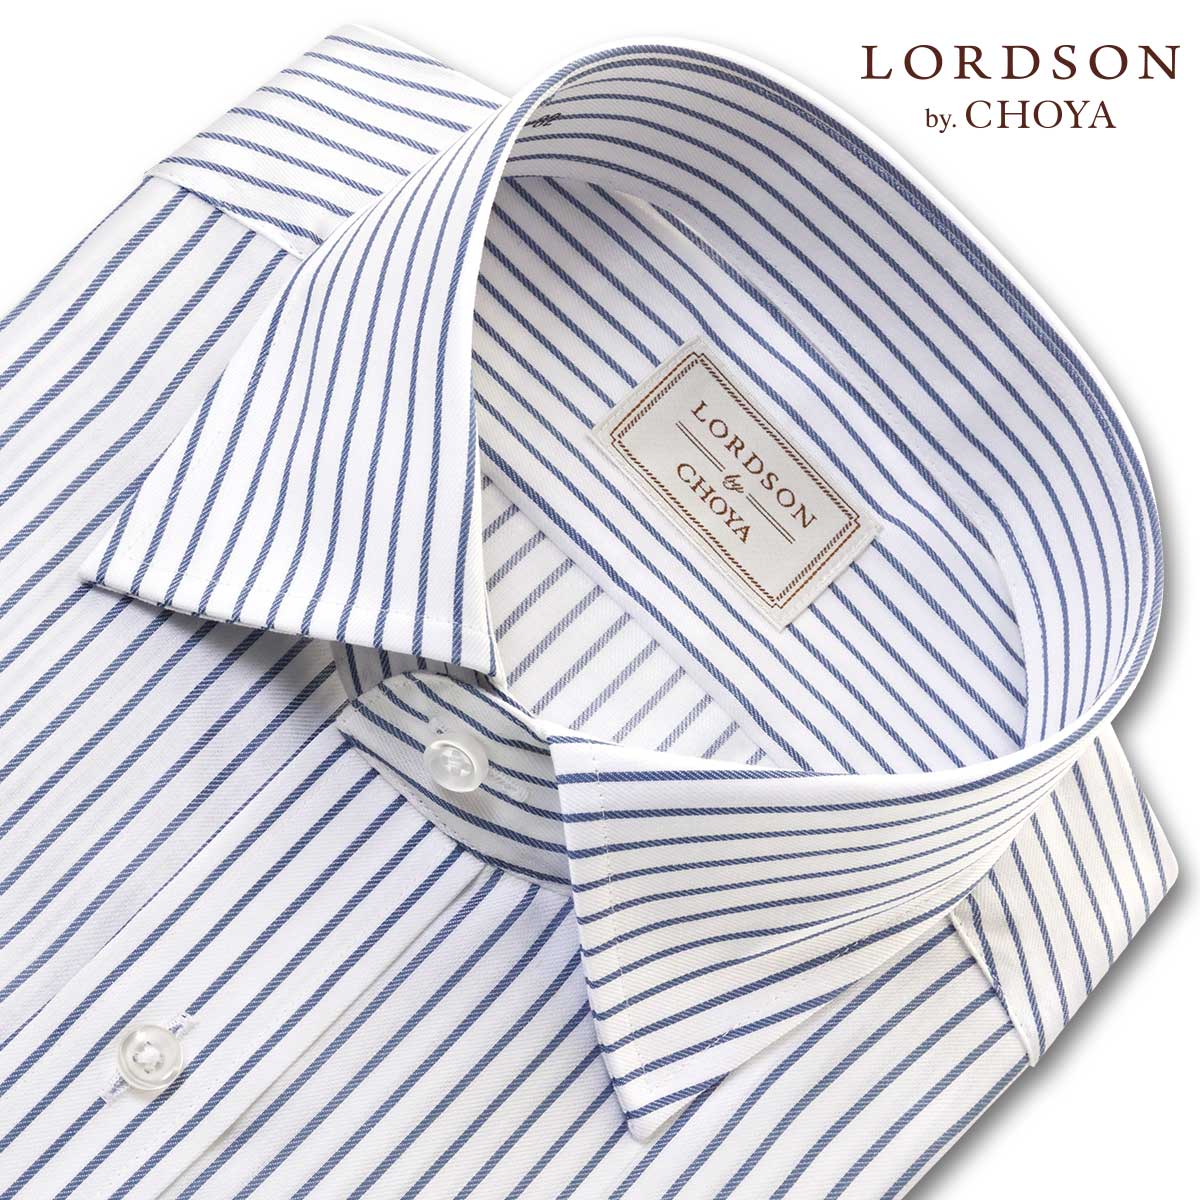 LORDSON Yシャツ 長袖 ワイシャツ メンズ ワイドカラー 形態安定 ブルーストライプ 綿100% LORDSON by CHOYA(cod705-455) 2306CL